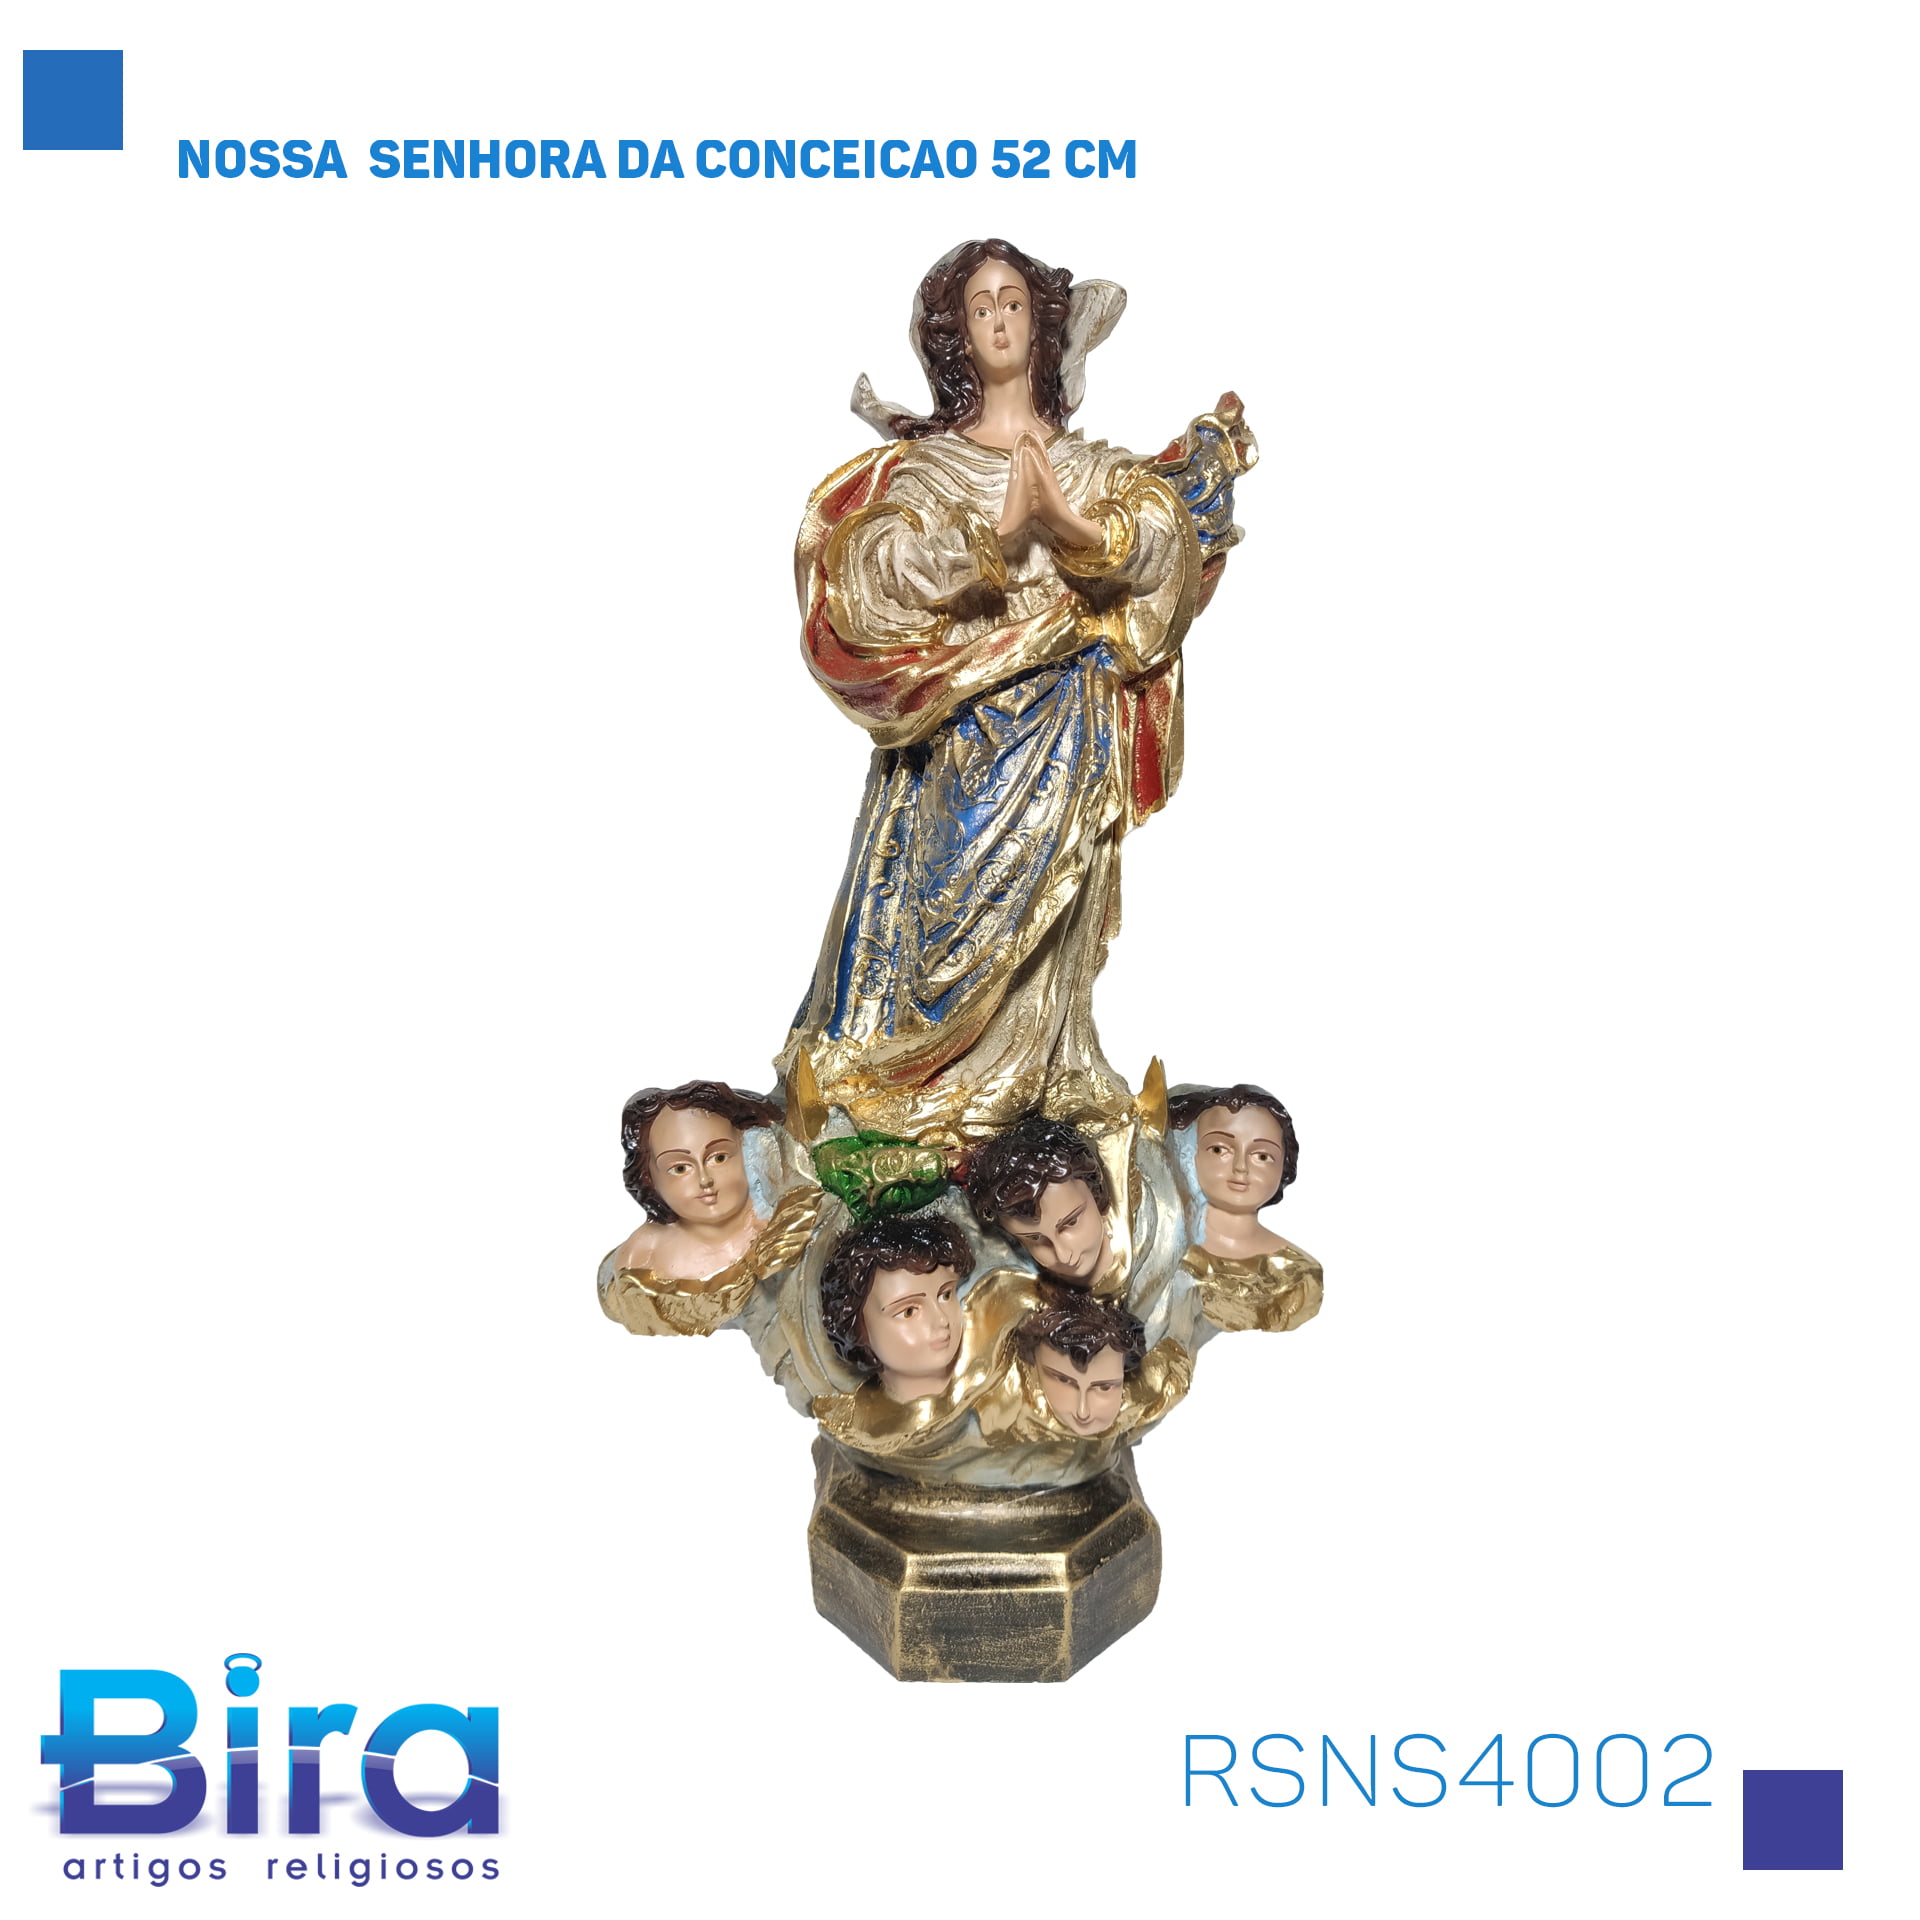 Bira Artigos Religiosos - NOSSA  SENHORA DA CONCEICAO 52 CM Cód. RSNS4002